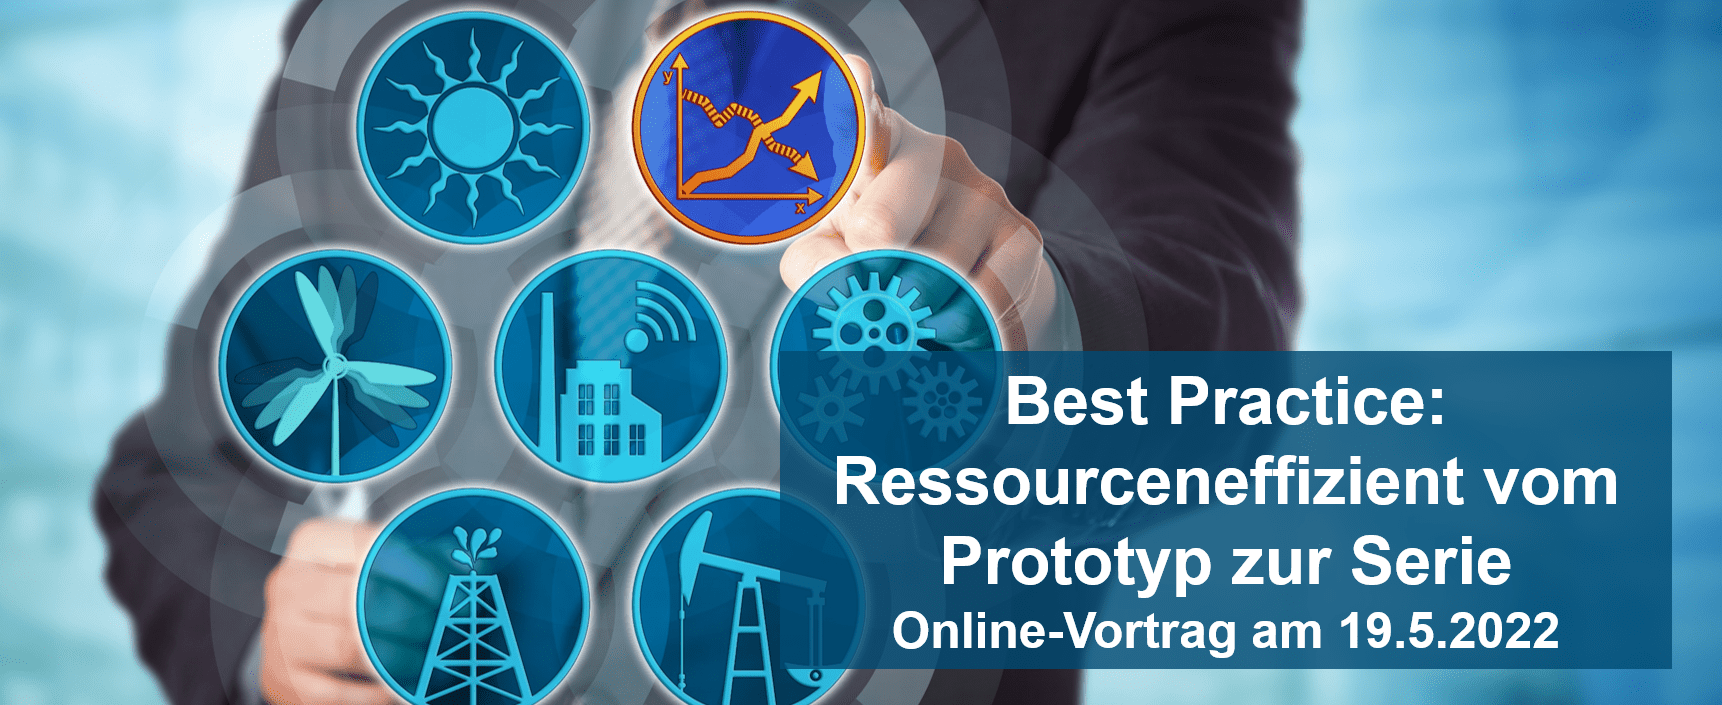 Best-Practice: Ressourceneffizient vom Prototyp zur Serie durch Digitalisierung